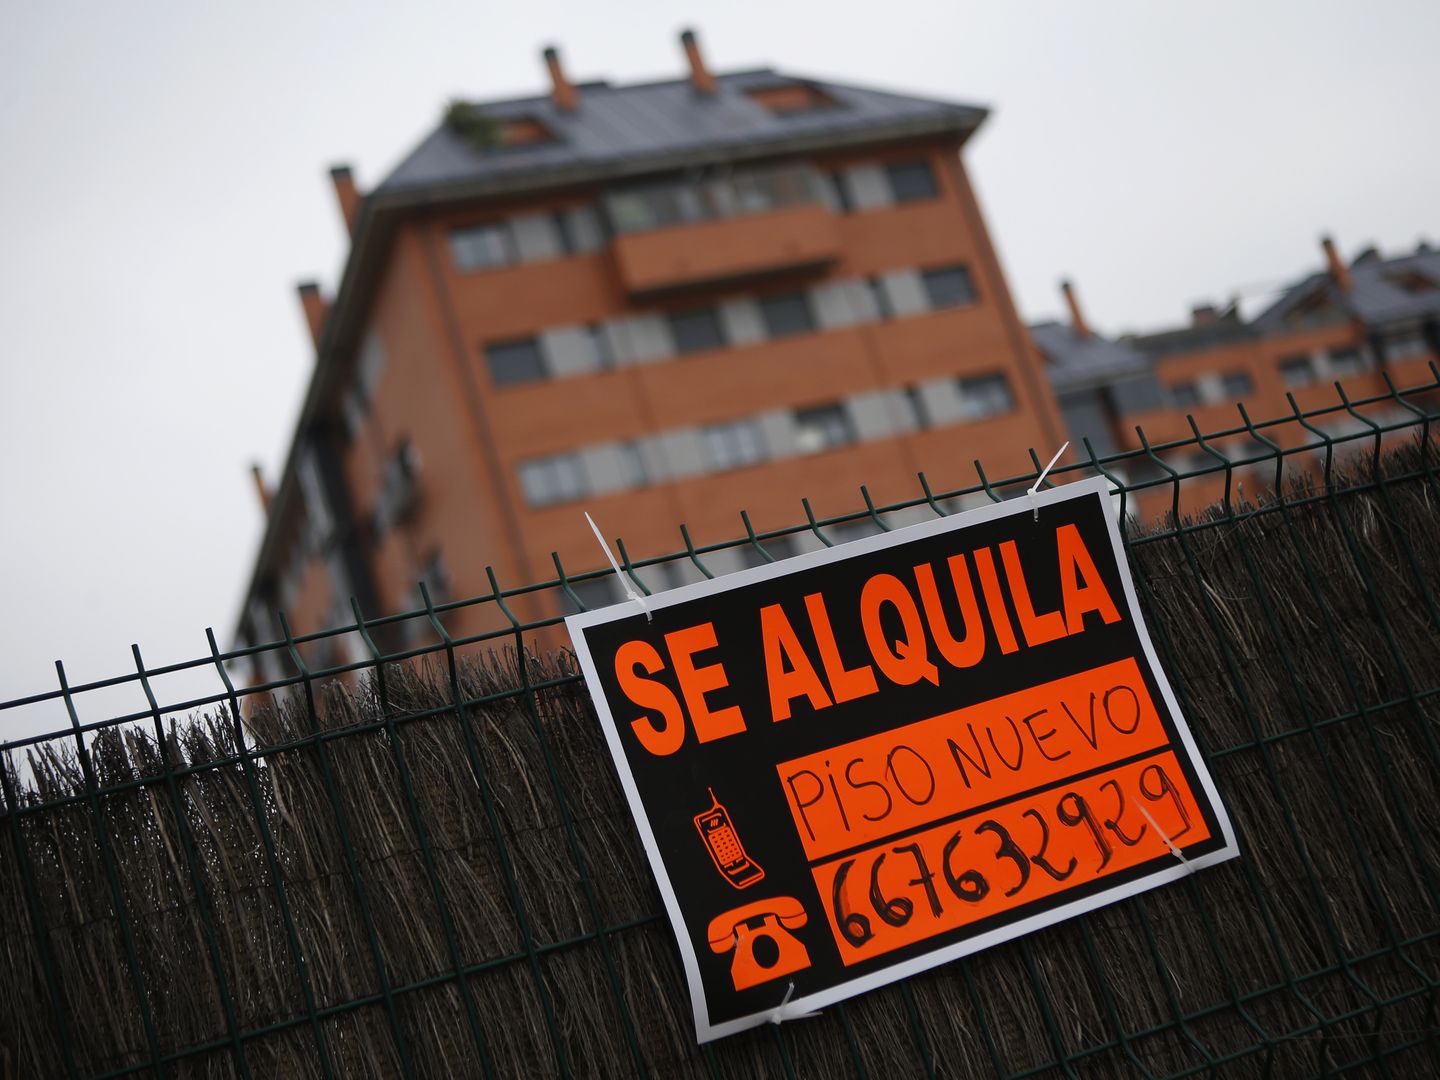 Piso en alquiler en Madrid. (Reuters)